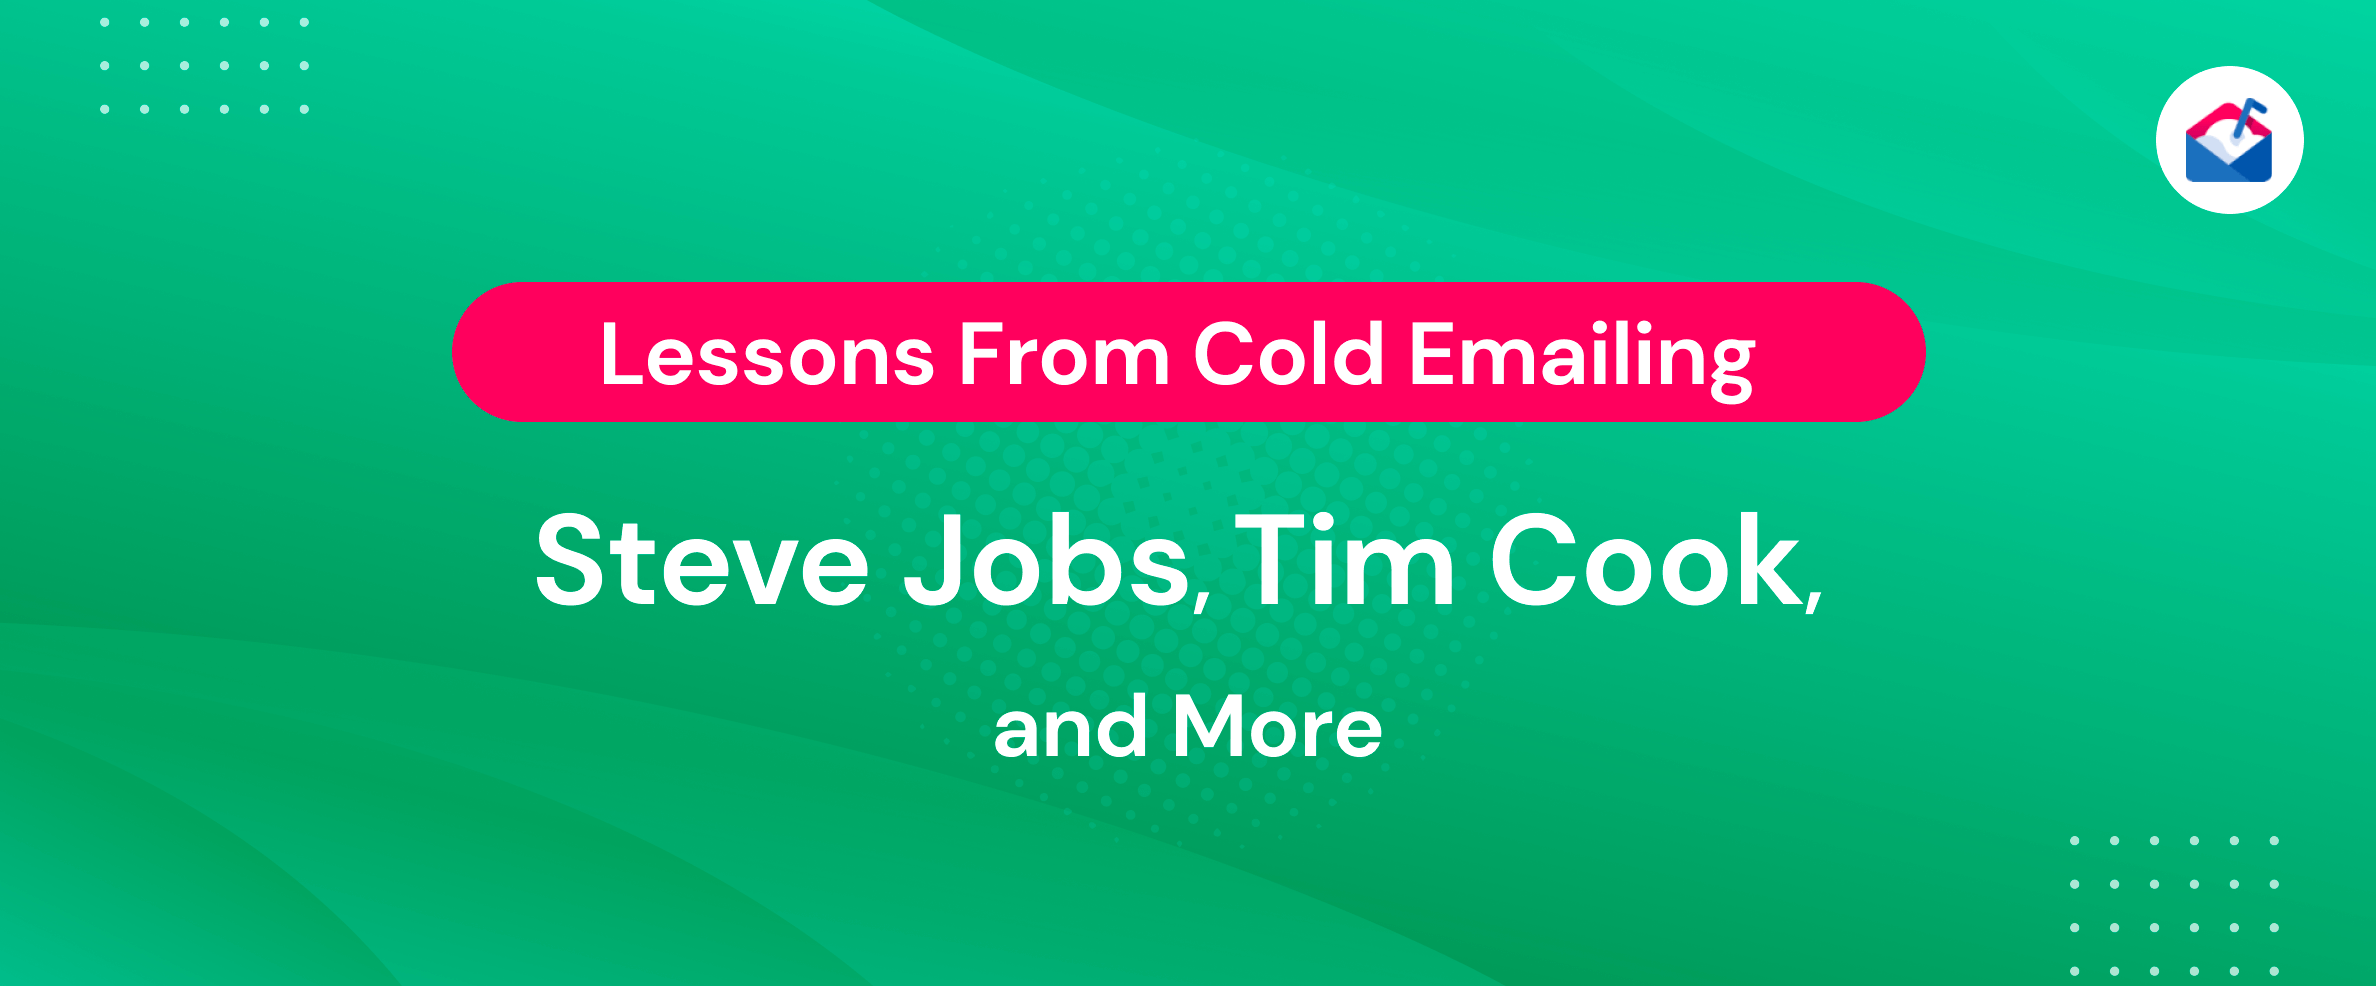 Pelajaran dari Cold Emailing Steve Jobs, Tim Cook, dan Lainnya